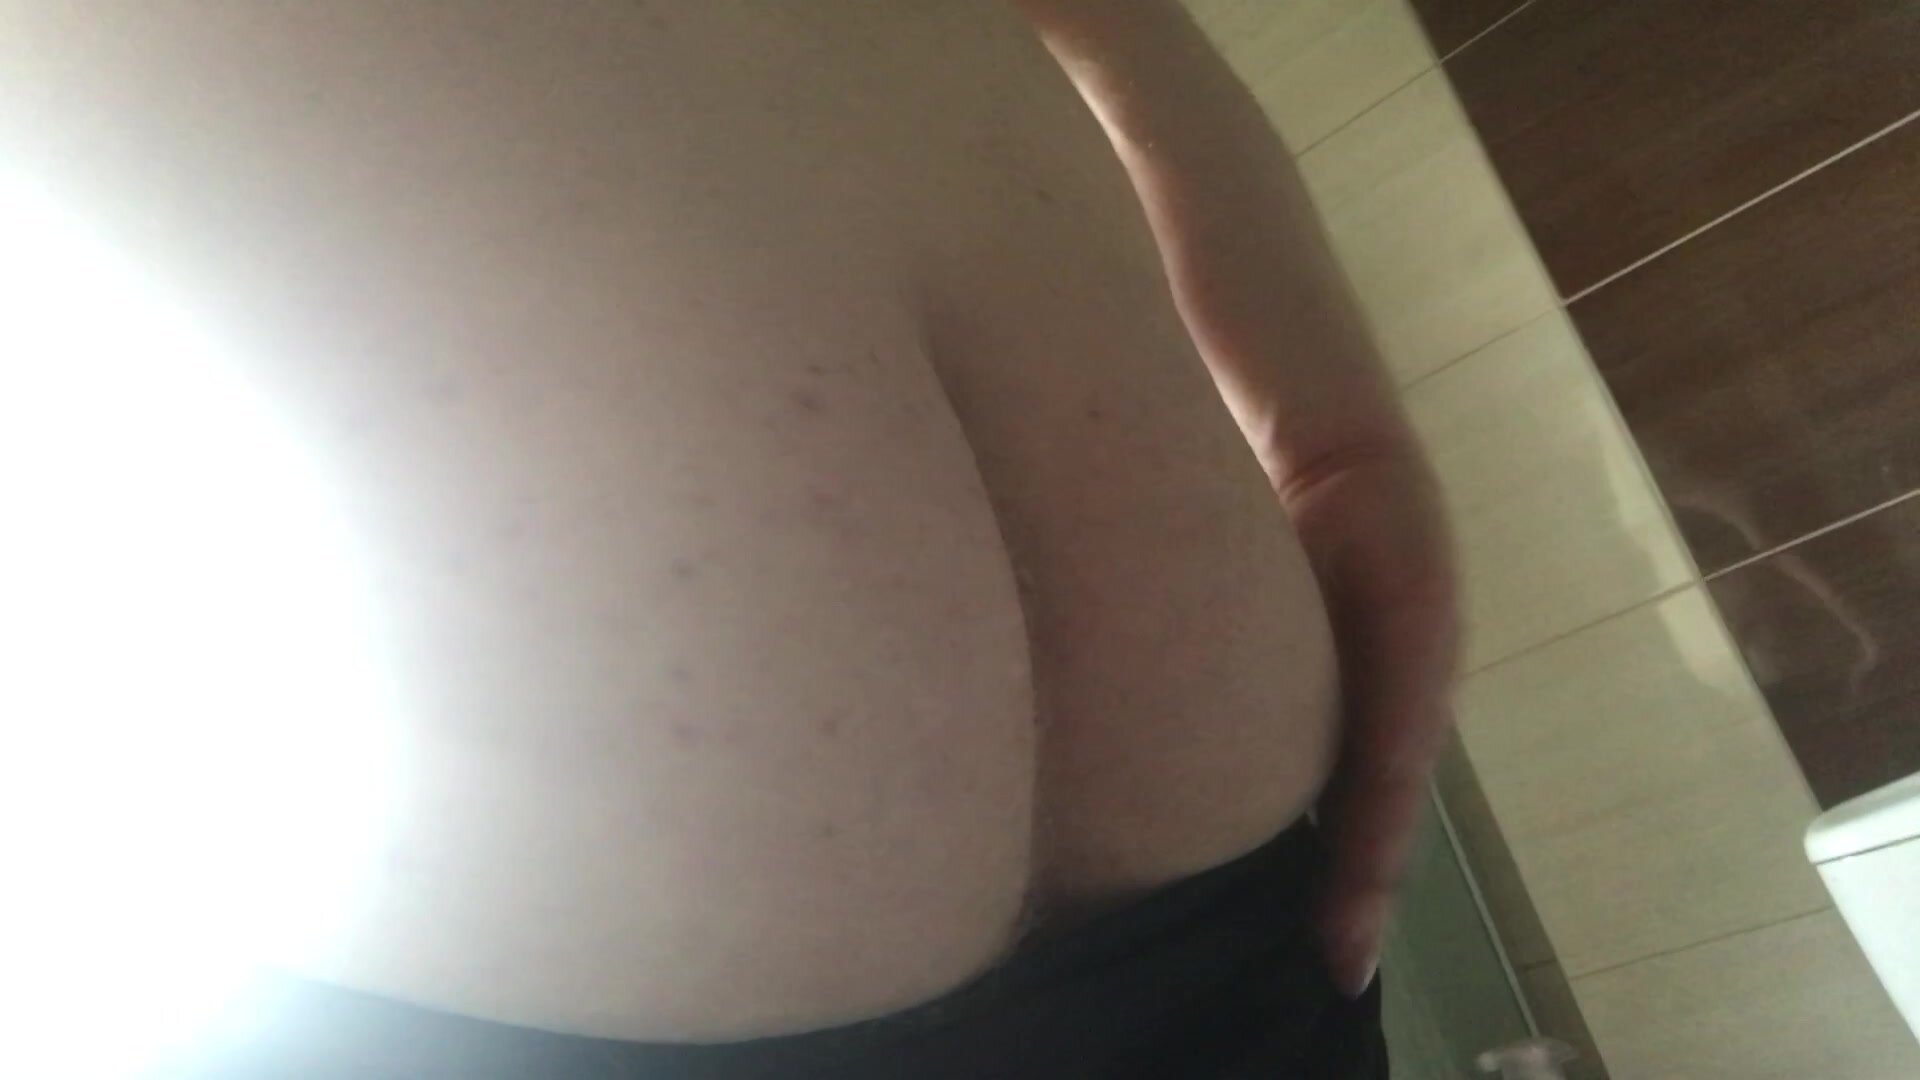 My butt - video 2